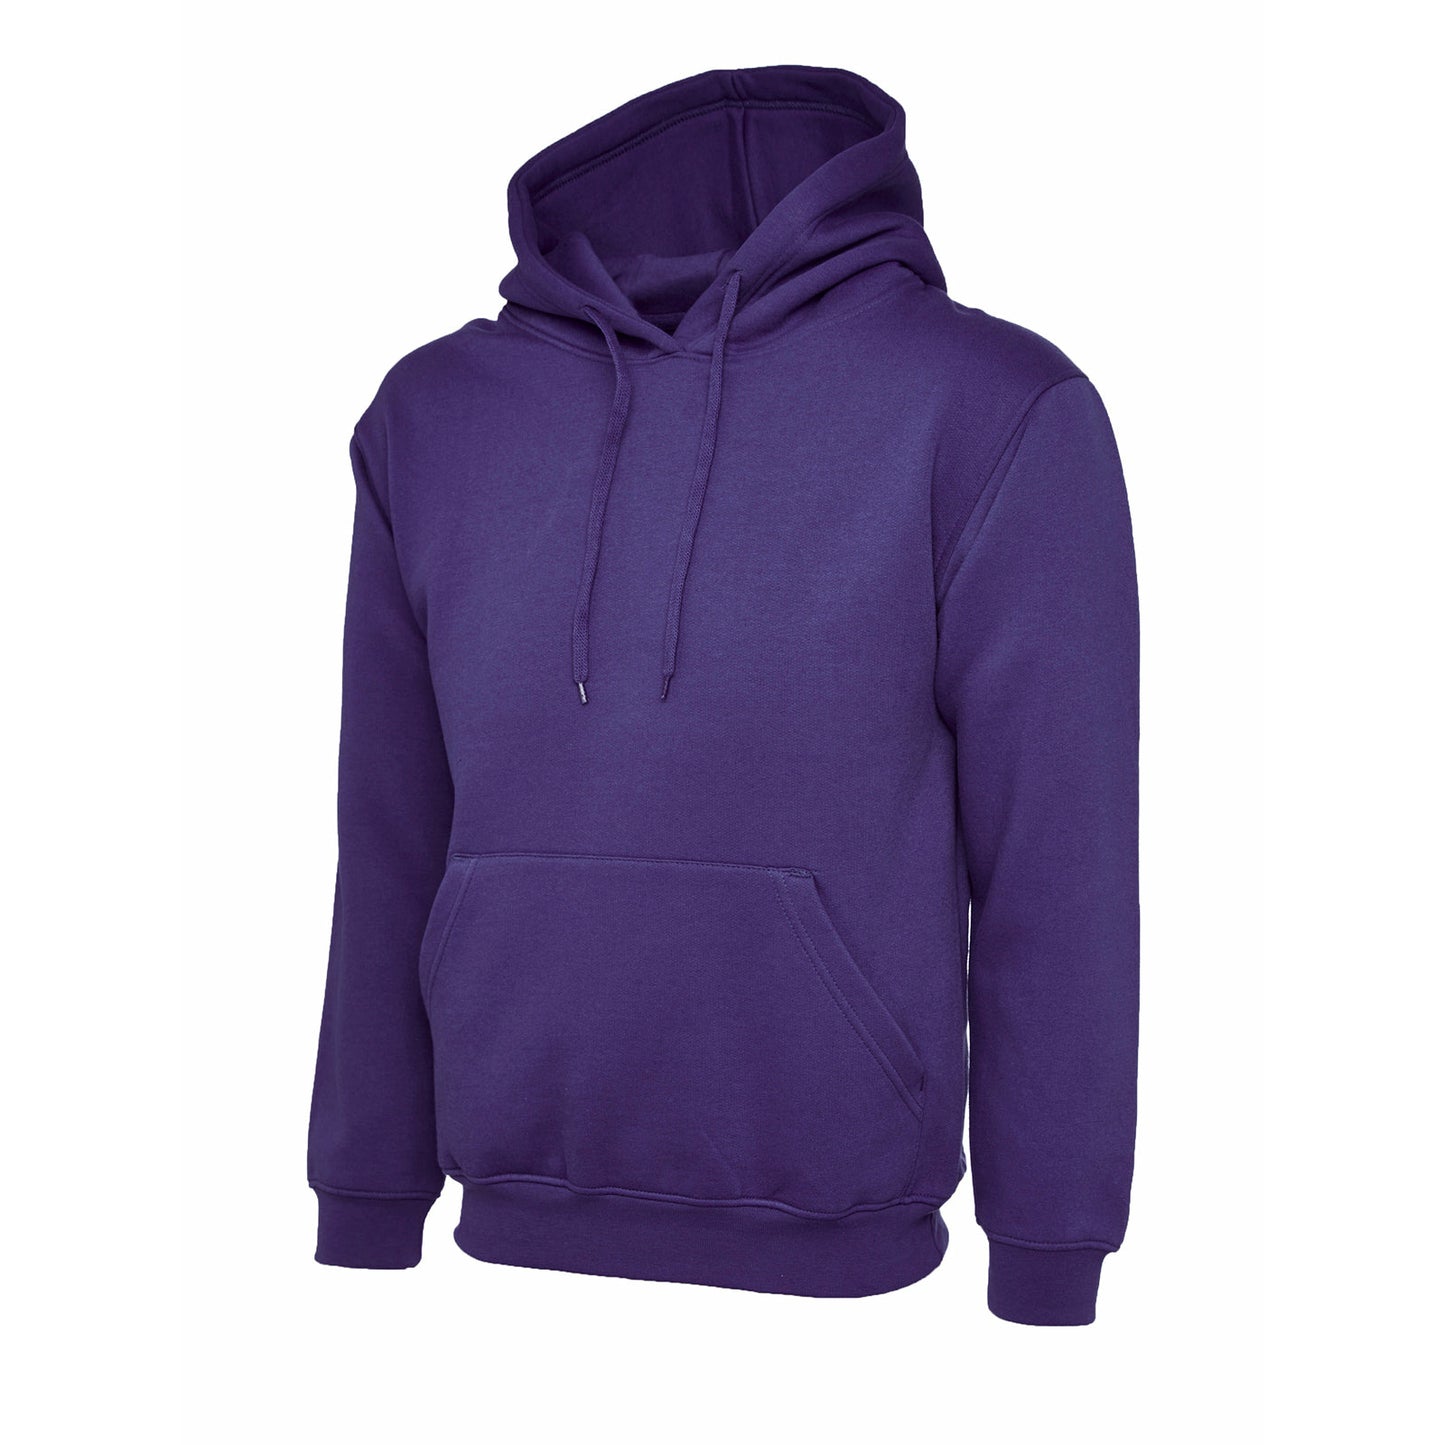 Ladies Deluxe Hooded Sweatshirt Purple